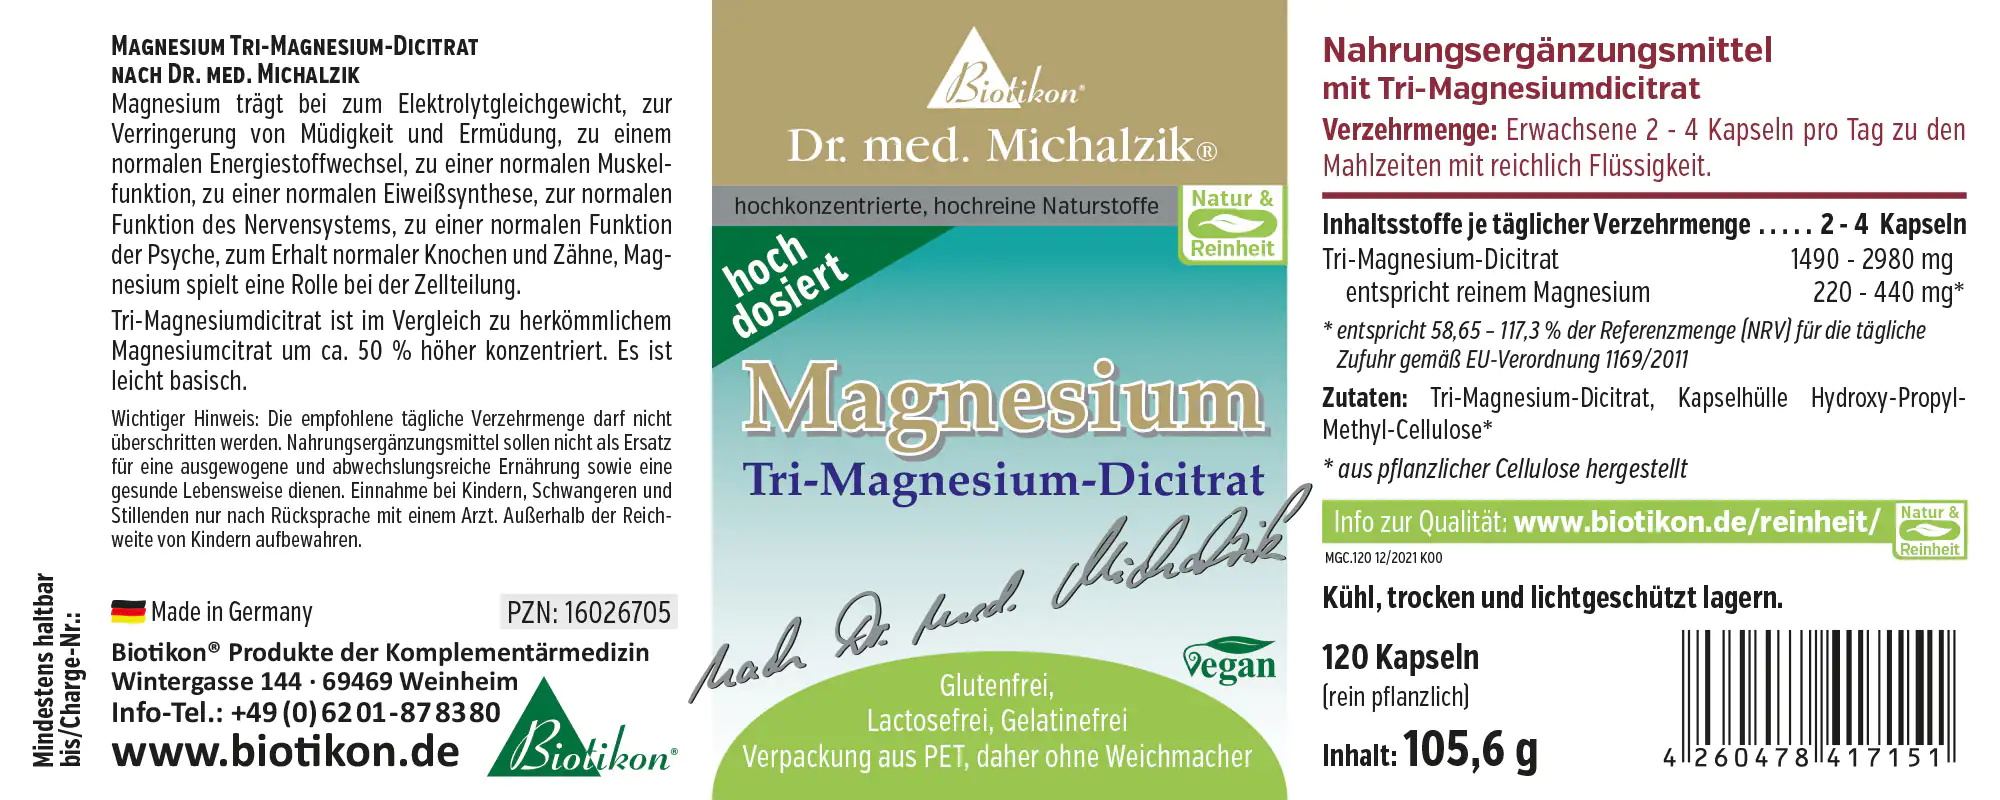 Magnesium Tri-Magnesium-Dicitrat Kapseln